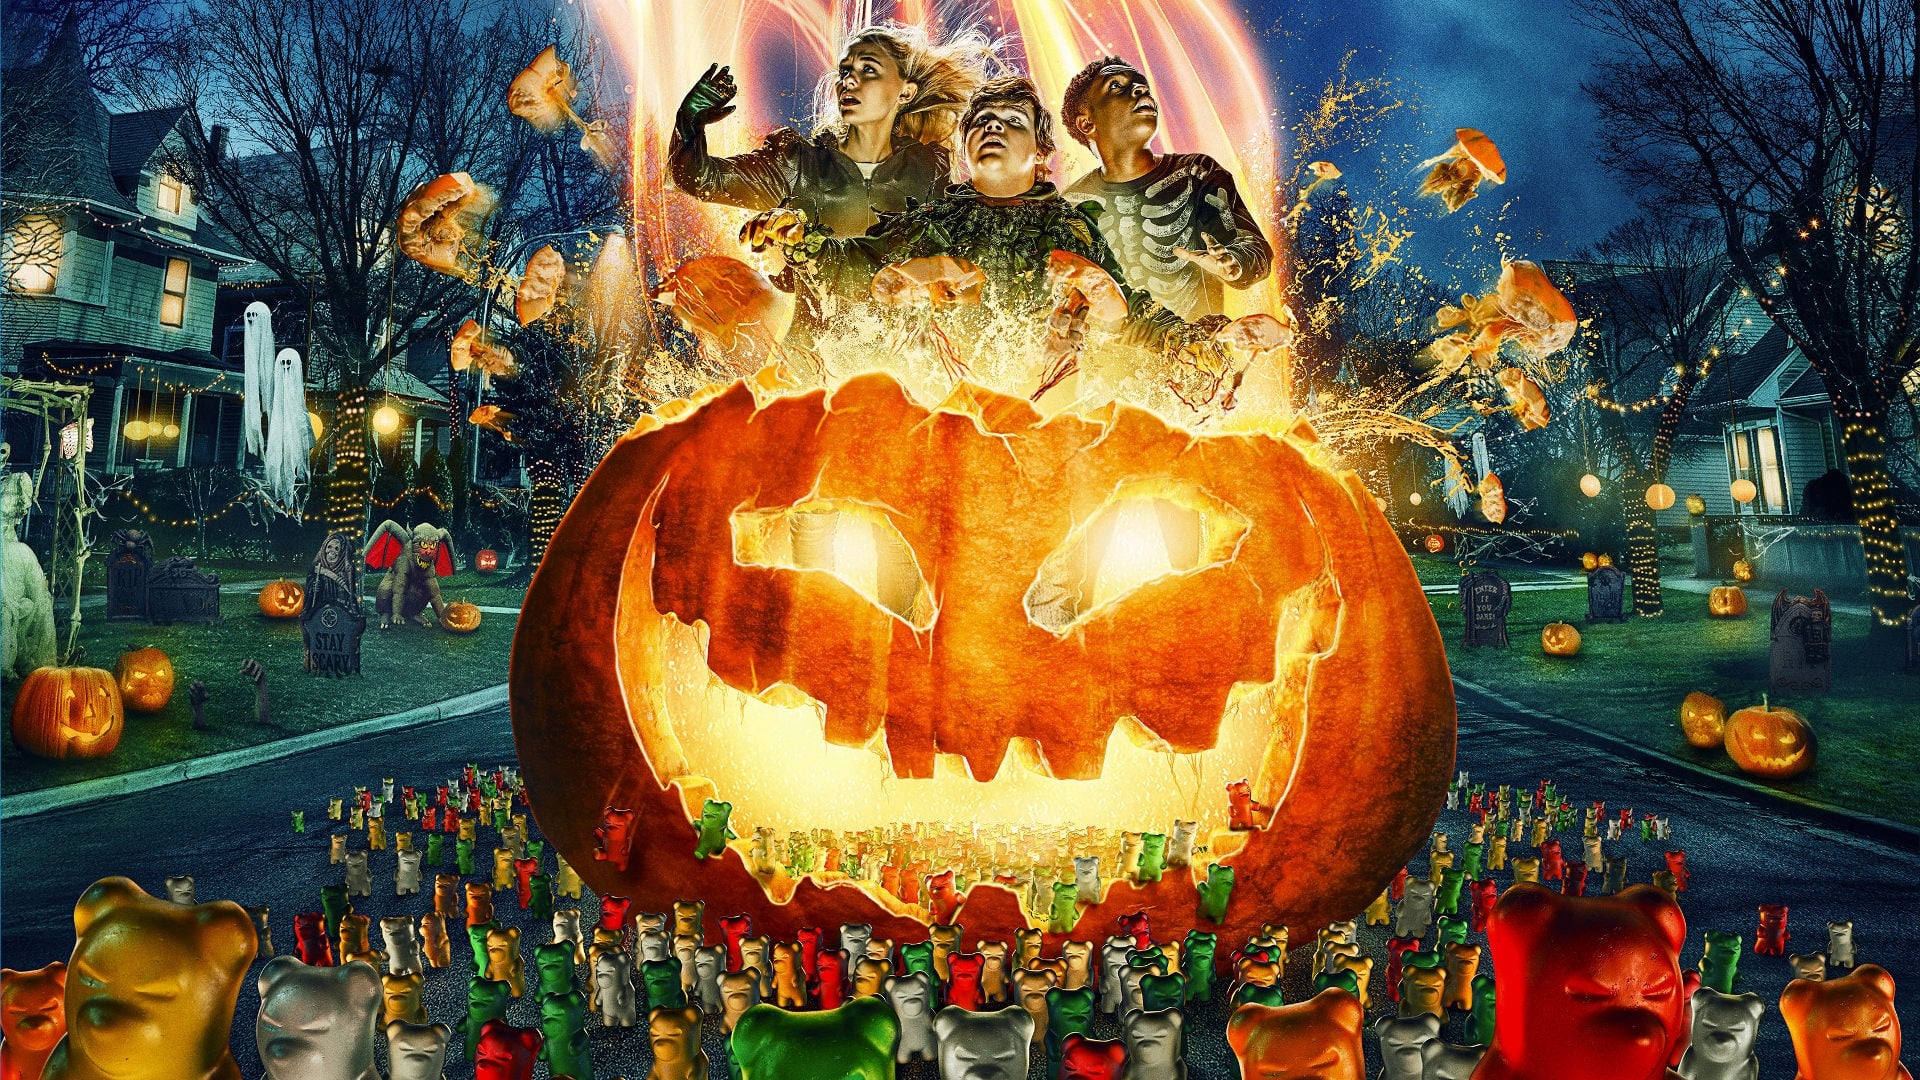 Xem Phim Câu Chuyện Lúc Nửa Đêm 2: Halloween Quỷ Ám (Goosebumps 2: Haunted Halloween)